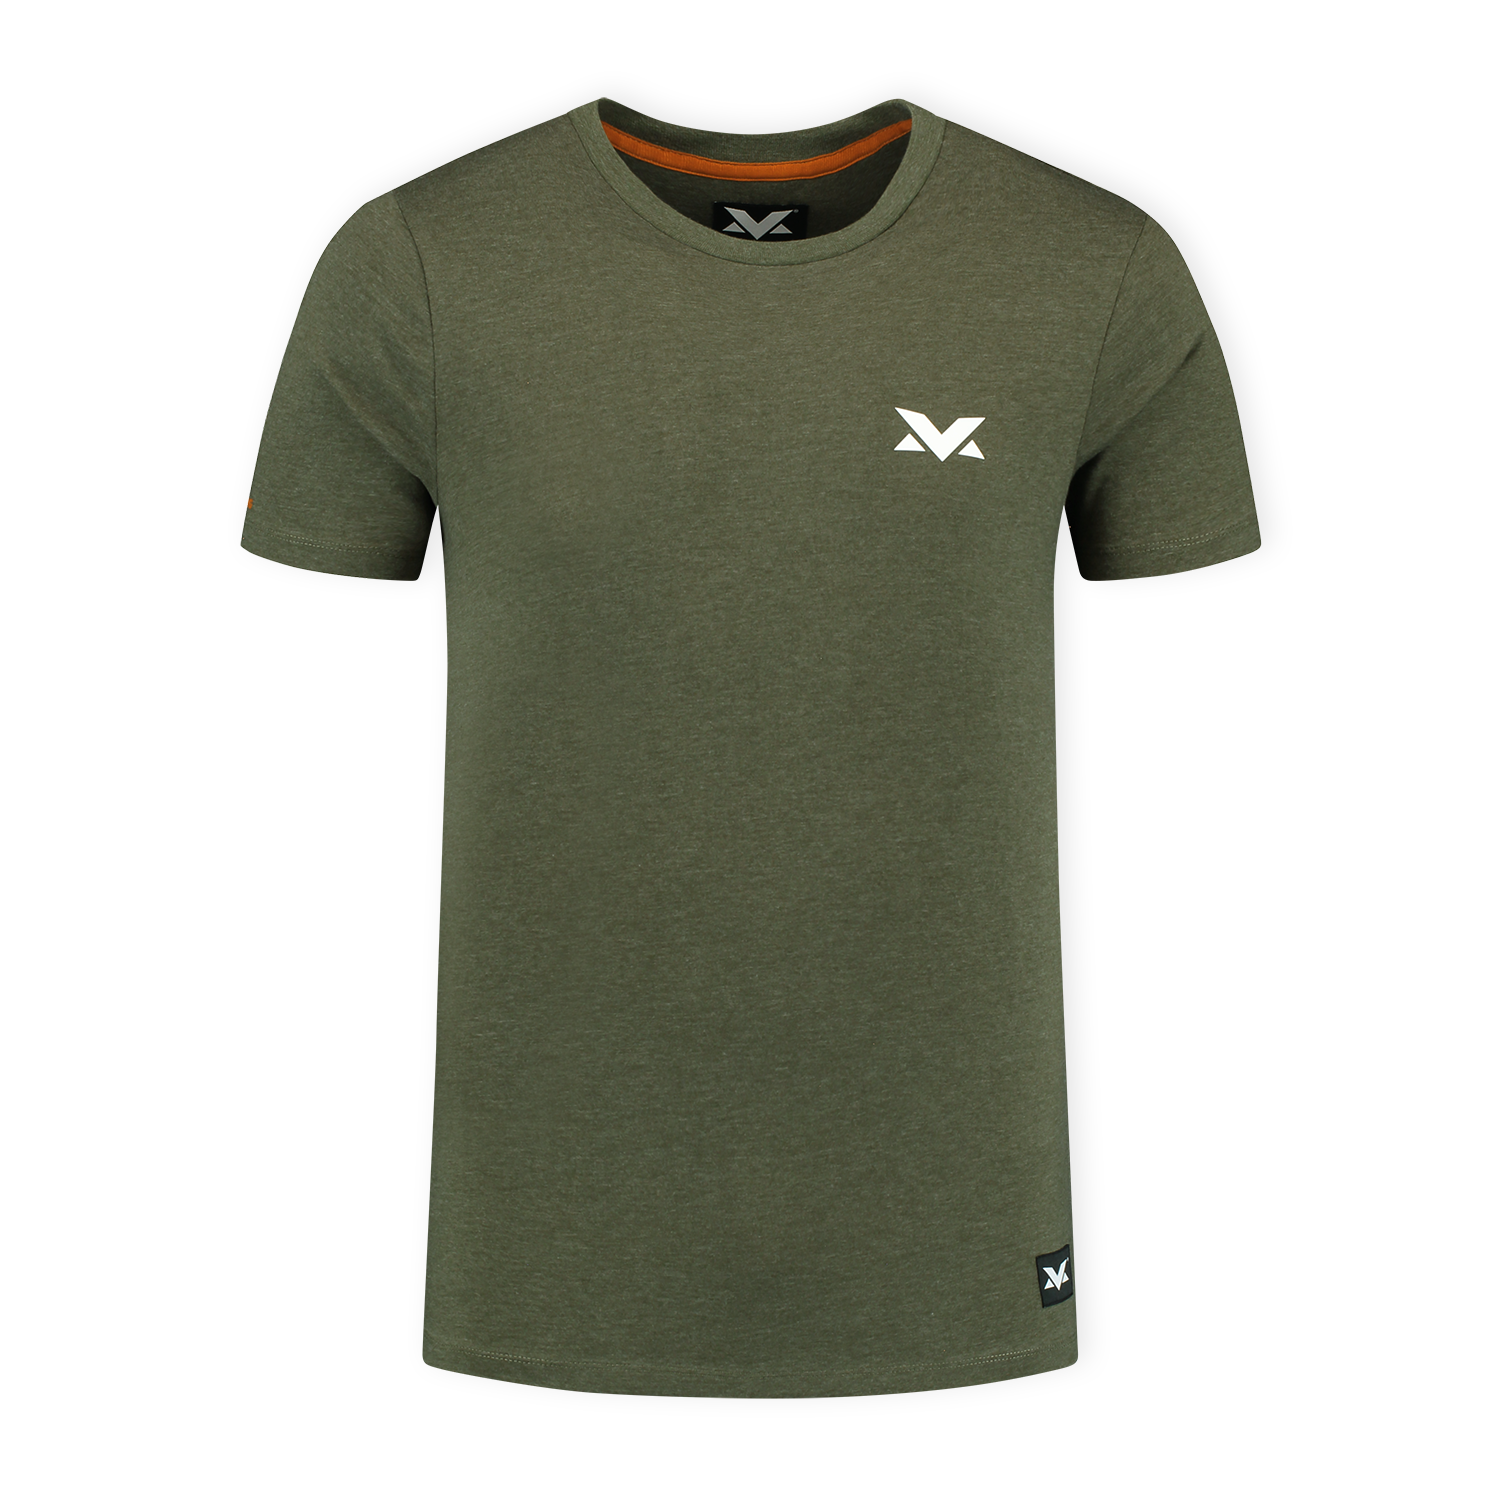 MV T-shirt The Limits - Groen - XXXL - Max Verstappen